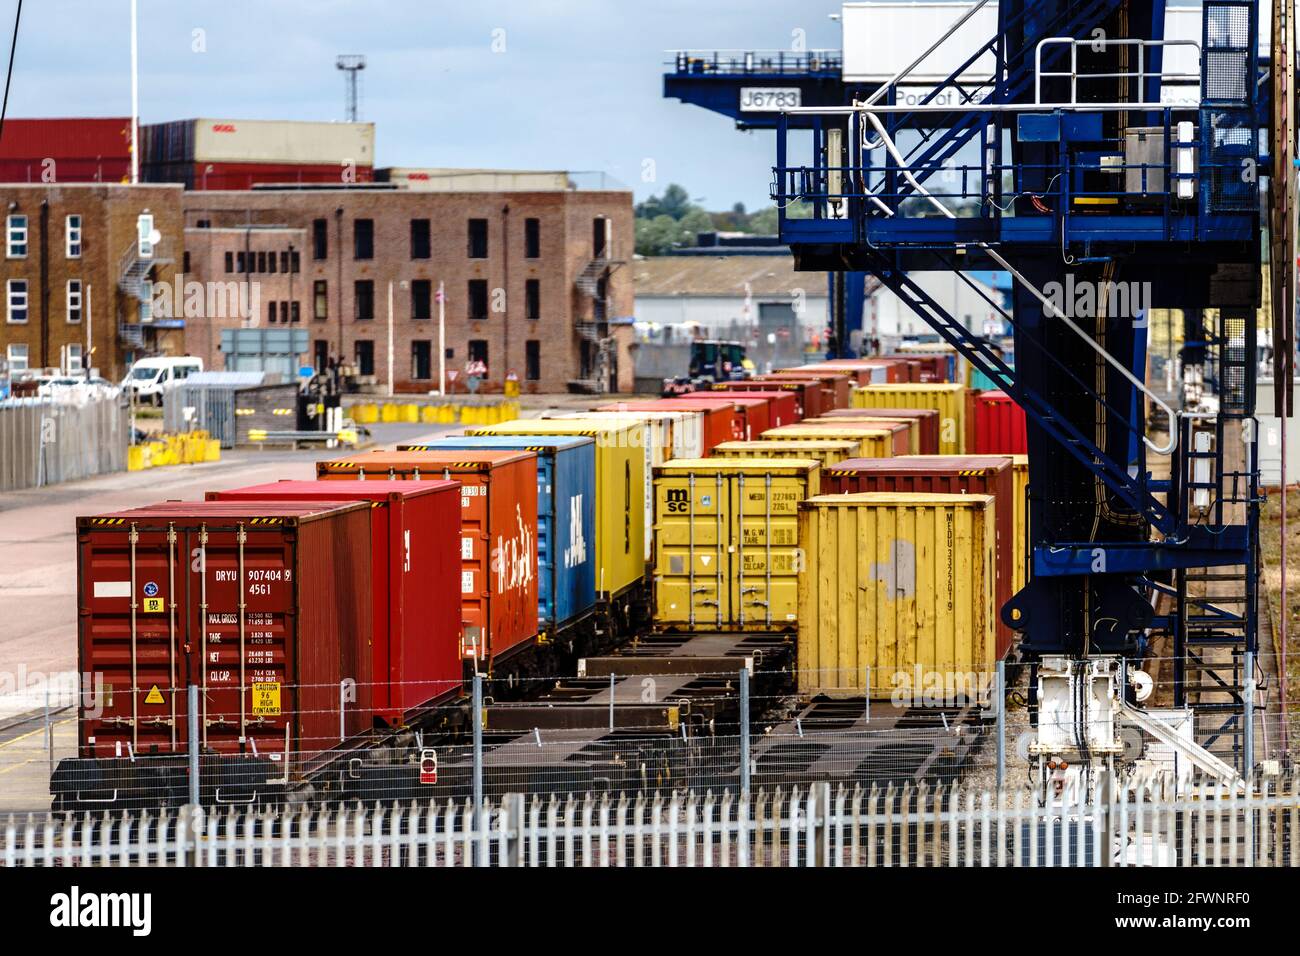 Fret ferroviaire à conteneurs d'expédition au Royaume-Uni - des conteneurs d'expédition intermodaux sont chargés sur des trains pour un transport ultérieur depuis le port de Felixstowe, au Royaume-Uni Banque D'Images